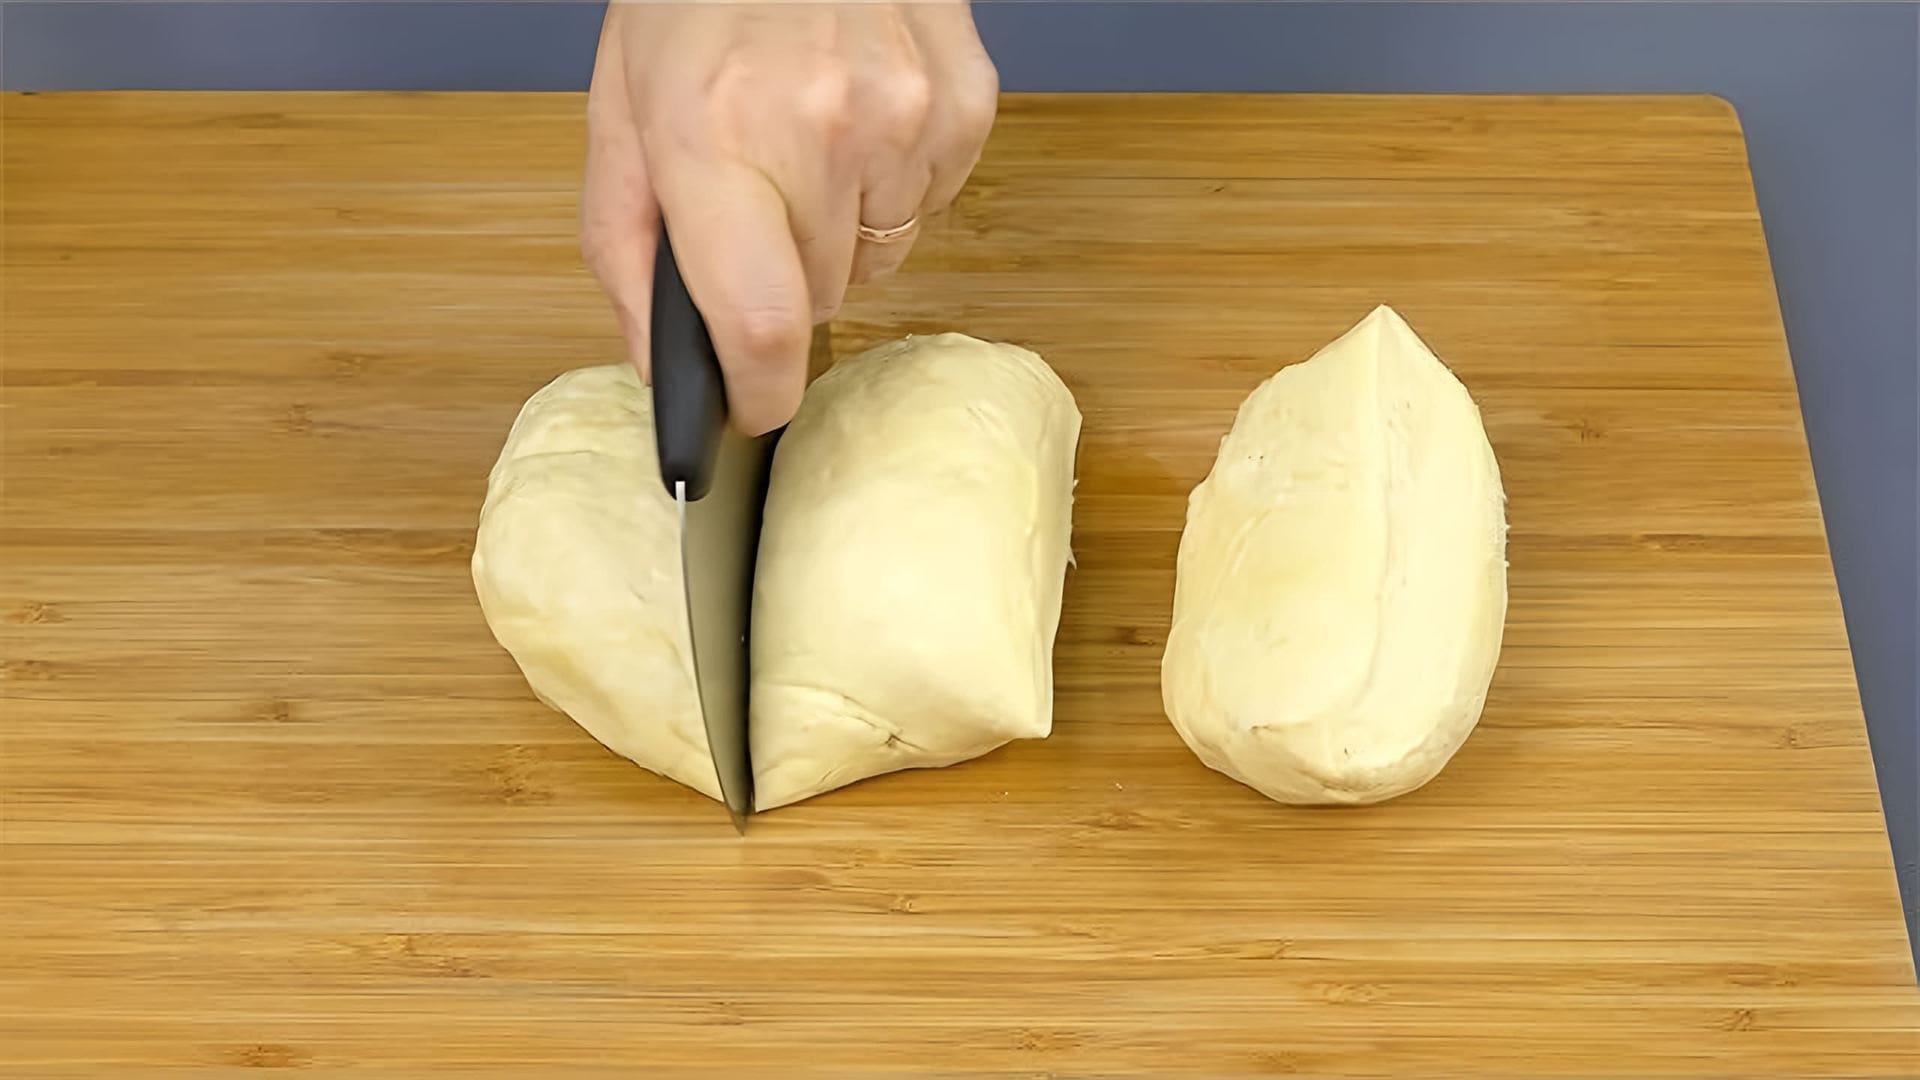 В этом видео автор показывает, как приготовить тесто "158" и делится различными рецептами блюд из него